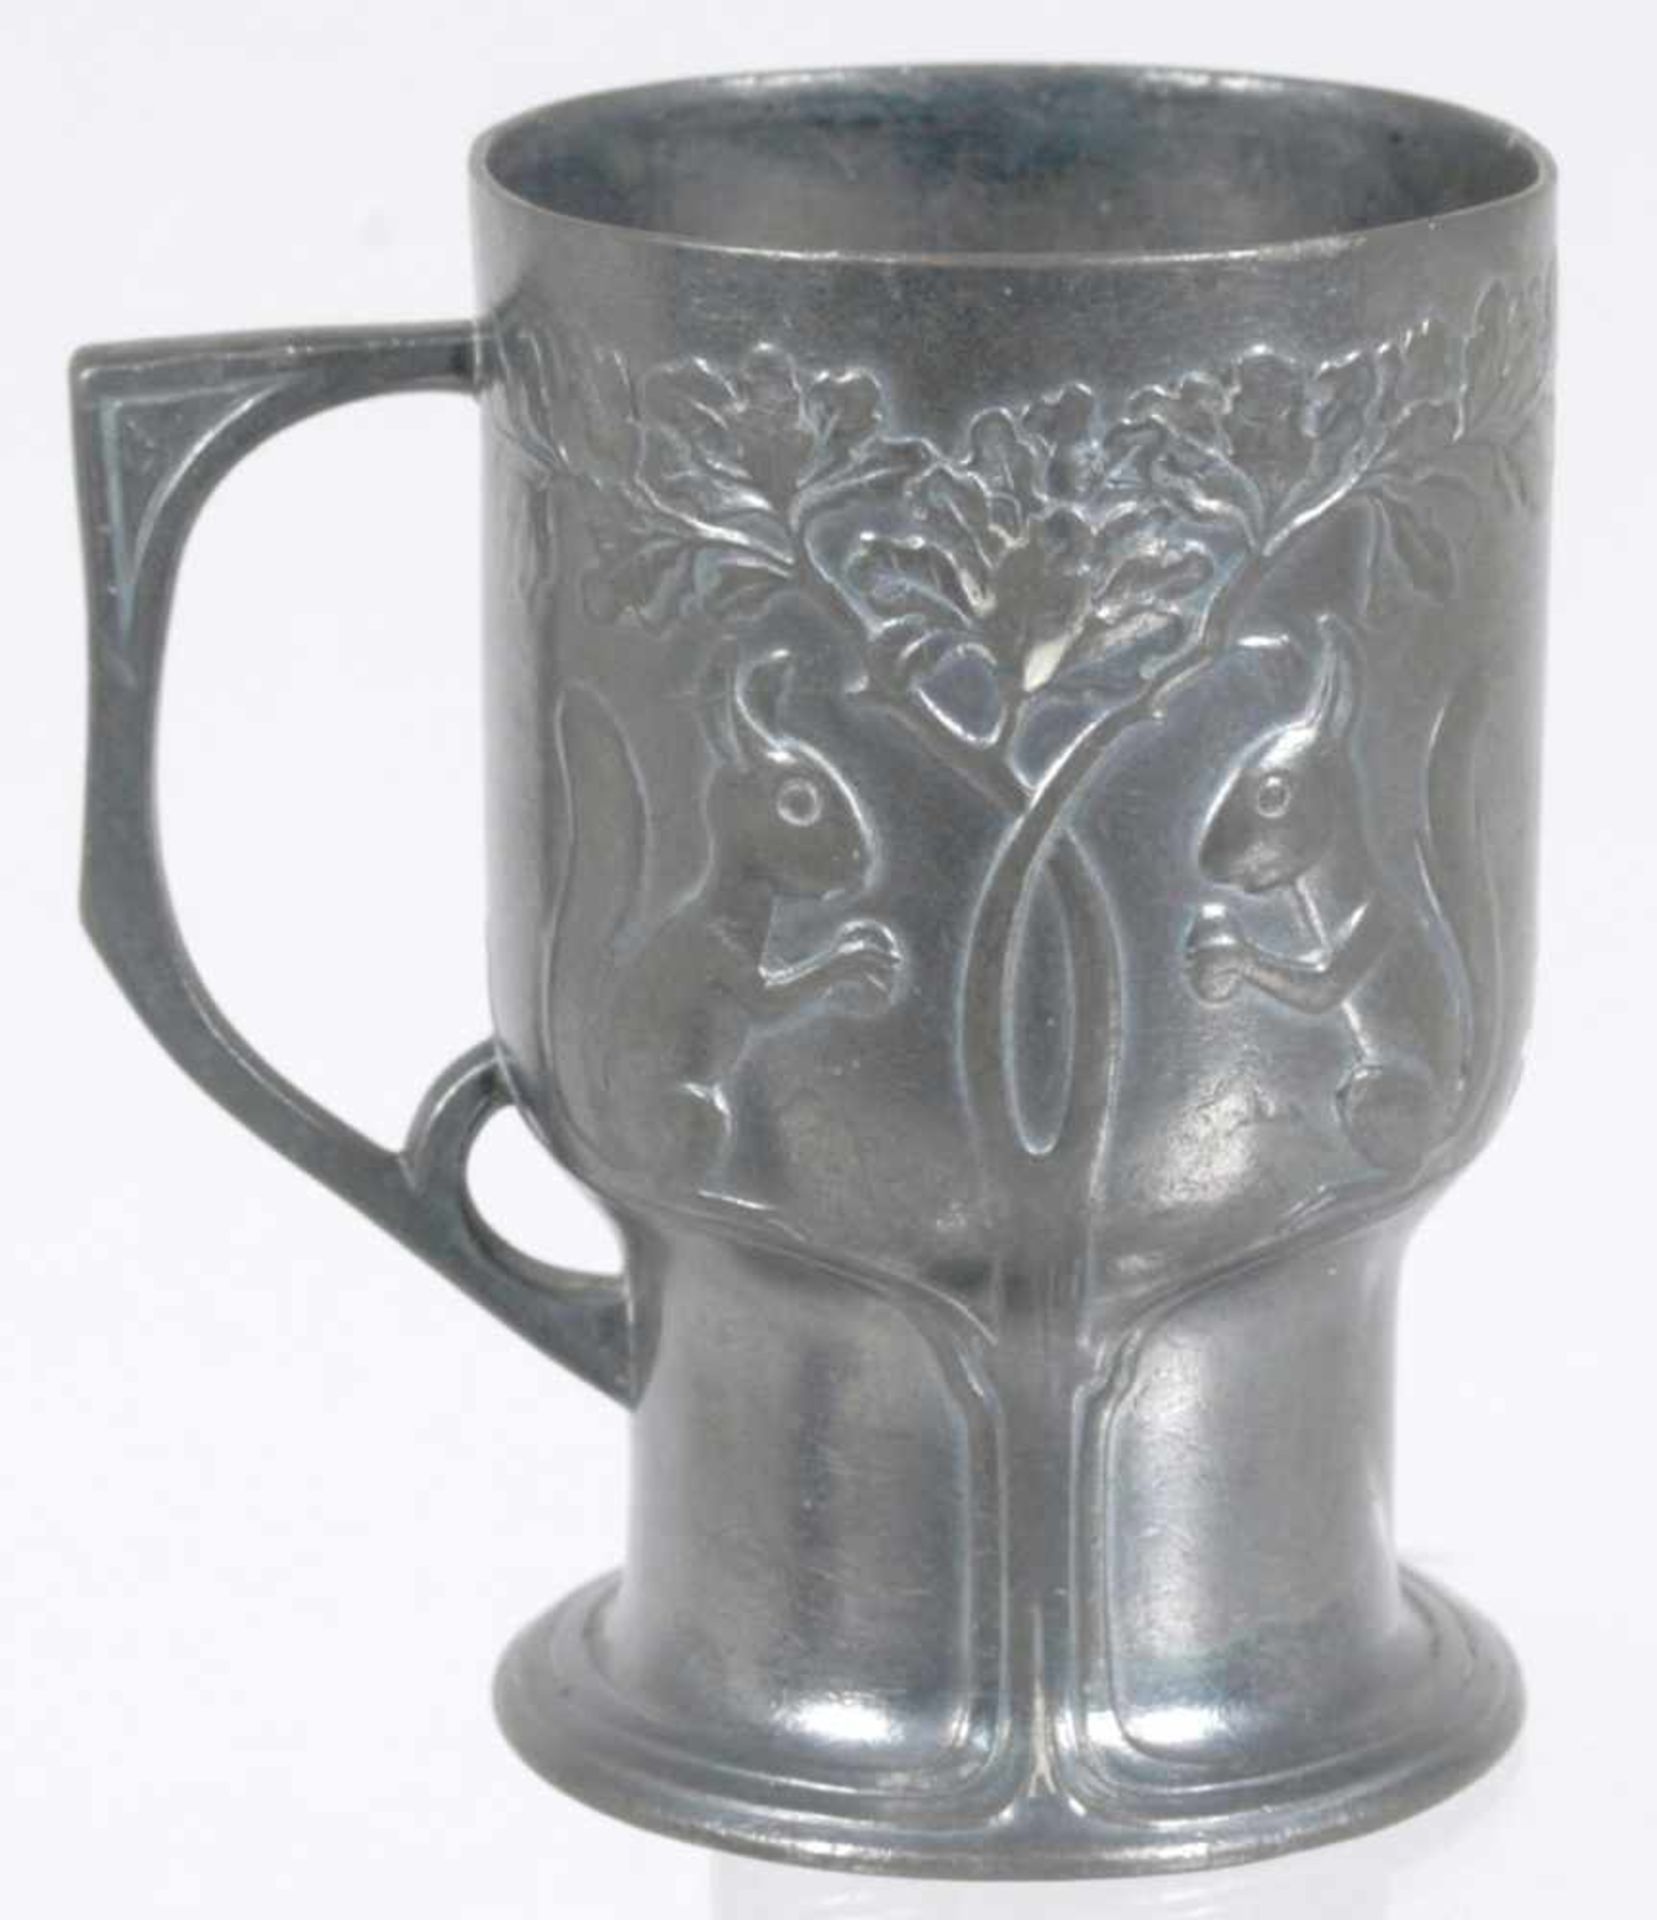 Britanniametall-Tasse, WMF, Geislingen, um 1906, Mod.nr. 49, auf flach ausgestelltemRundfuß - Bild 2 aus 3